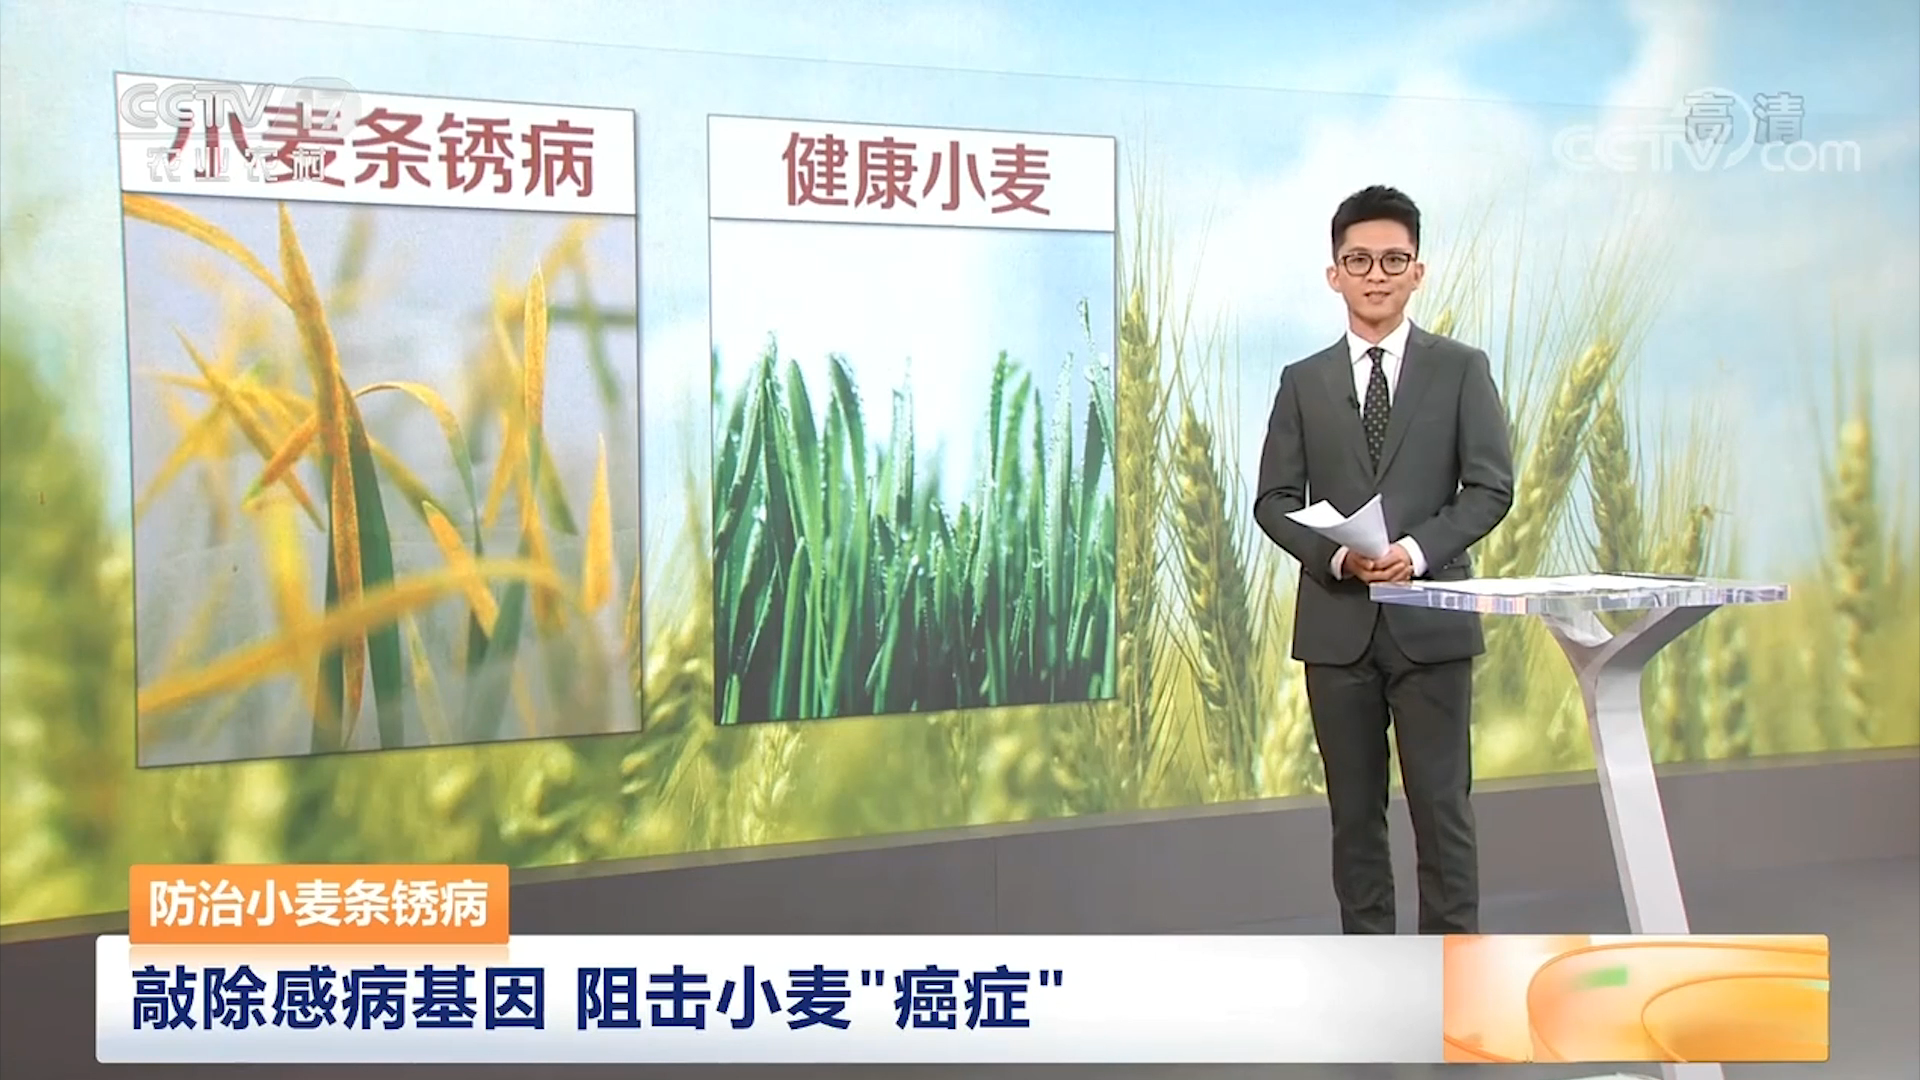 【中国三农报道】防治小麦条锈病 敲除感病基因 阻击小麦“癌症”